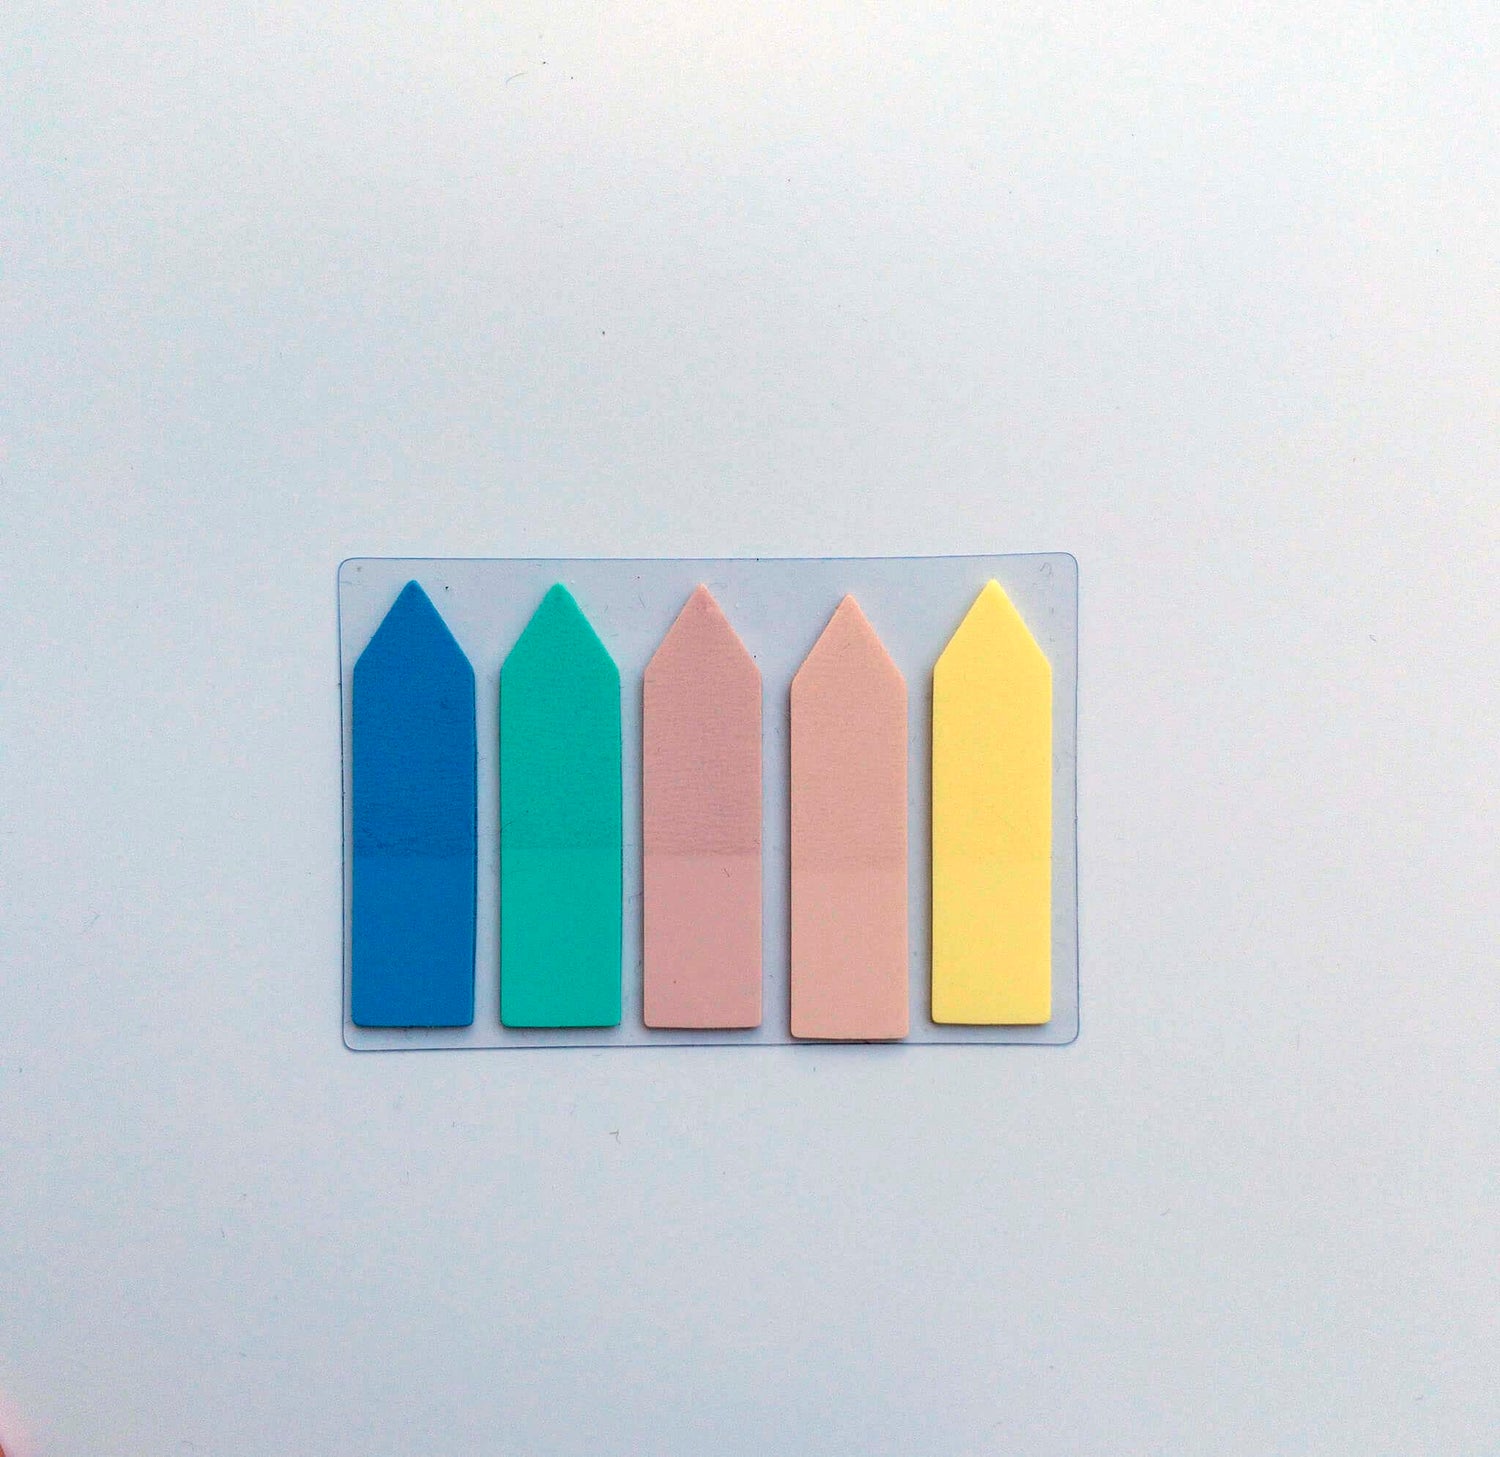 Σελιδοδείκτες αυτοκόλλητοι 5 χρωμάτων βέλος